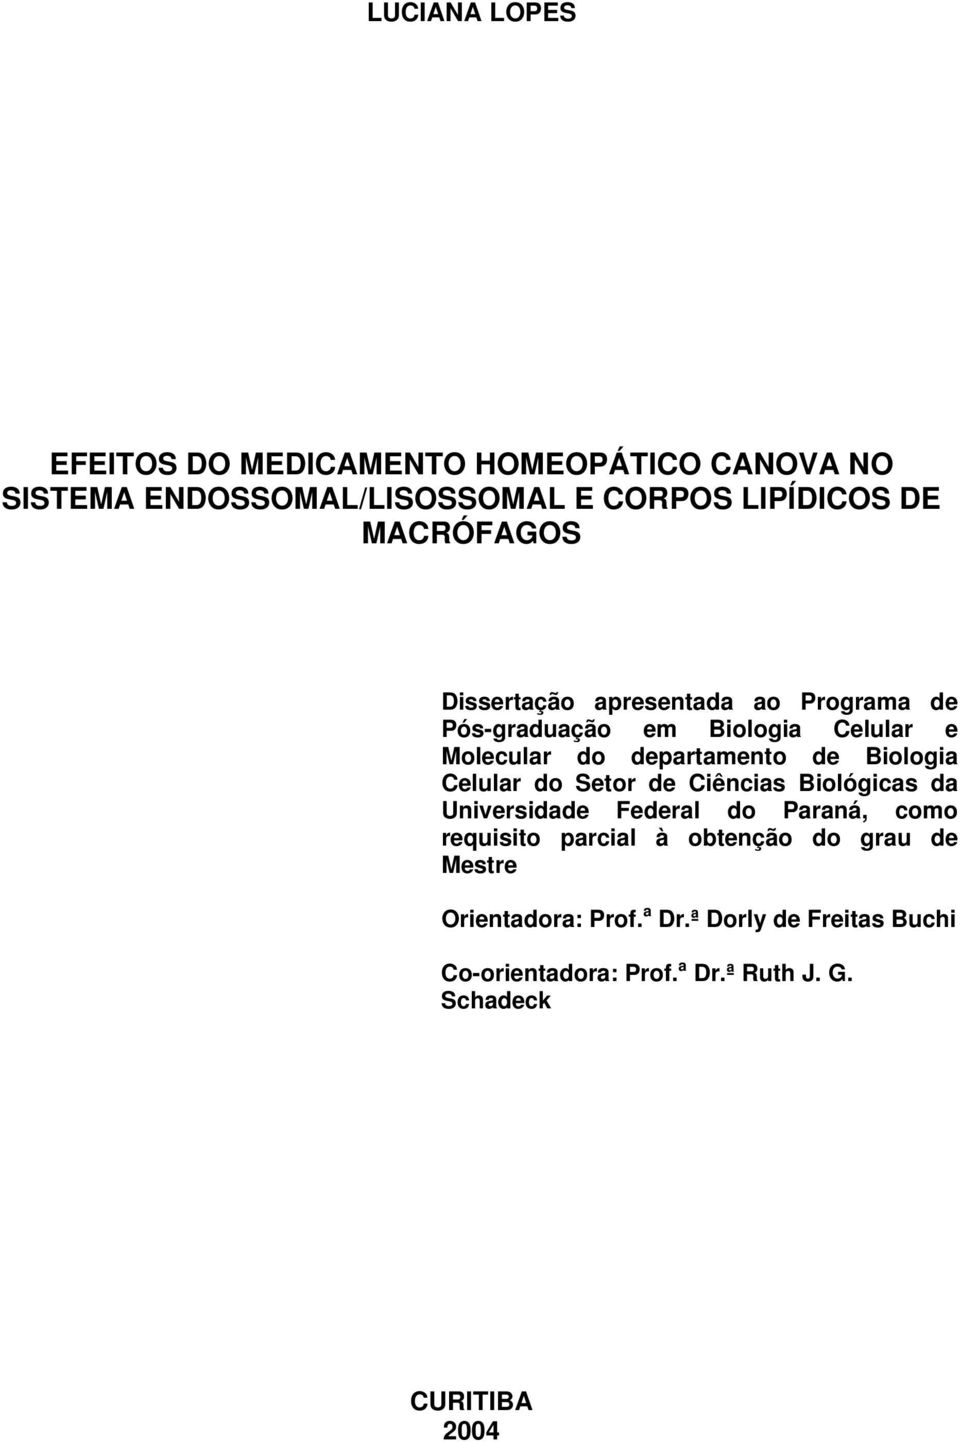 Biologia Celular do Setor de Ciências Biológicas da Universidade Federal do Paraná, como requisito parcial à obtenção